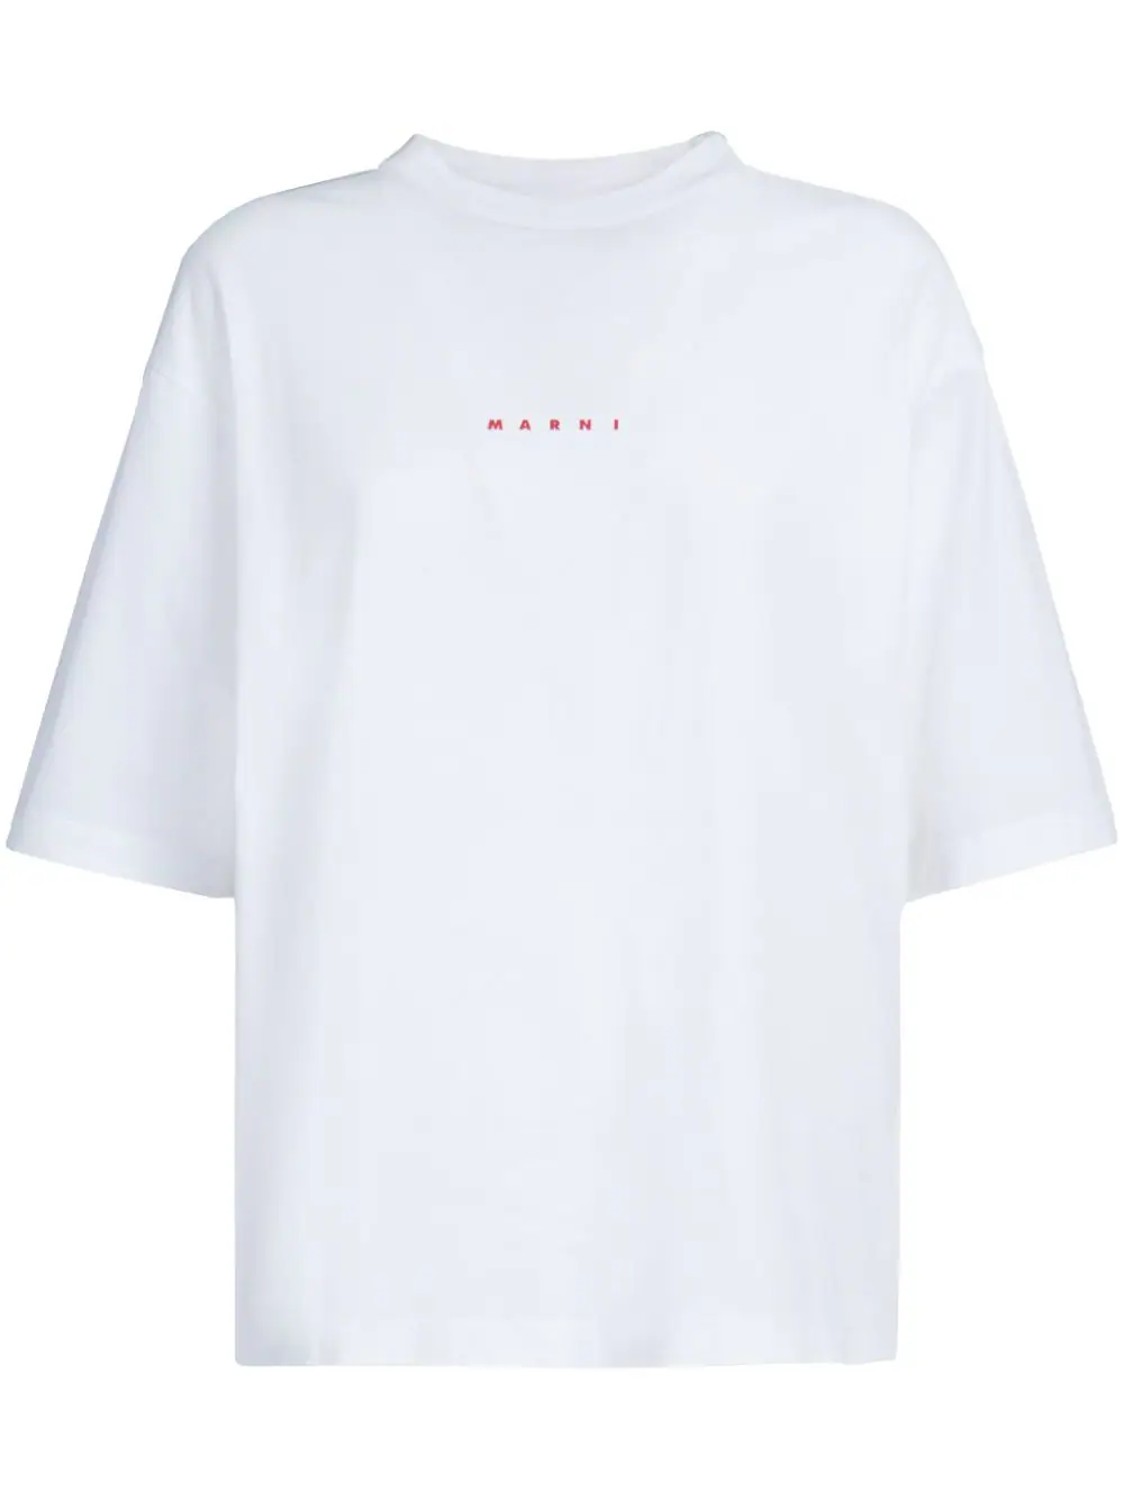 shop Marni  T-shirts: T-shirts Marni, oversize, maniche corte, girocollo, mini logo frontale.

Composizione: 100% cotone. number 2690